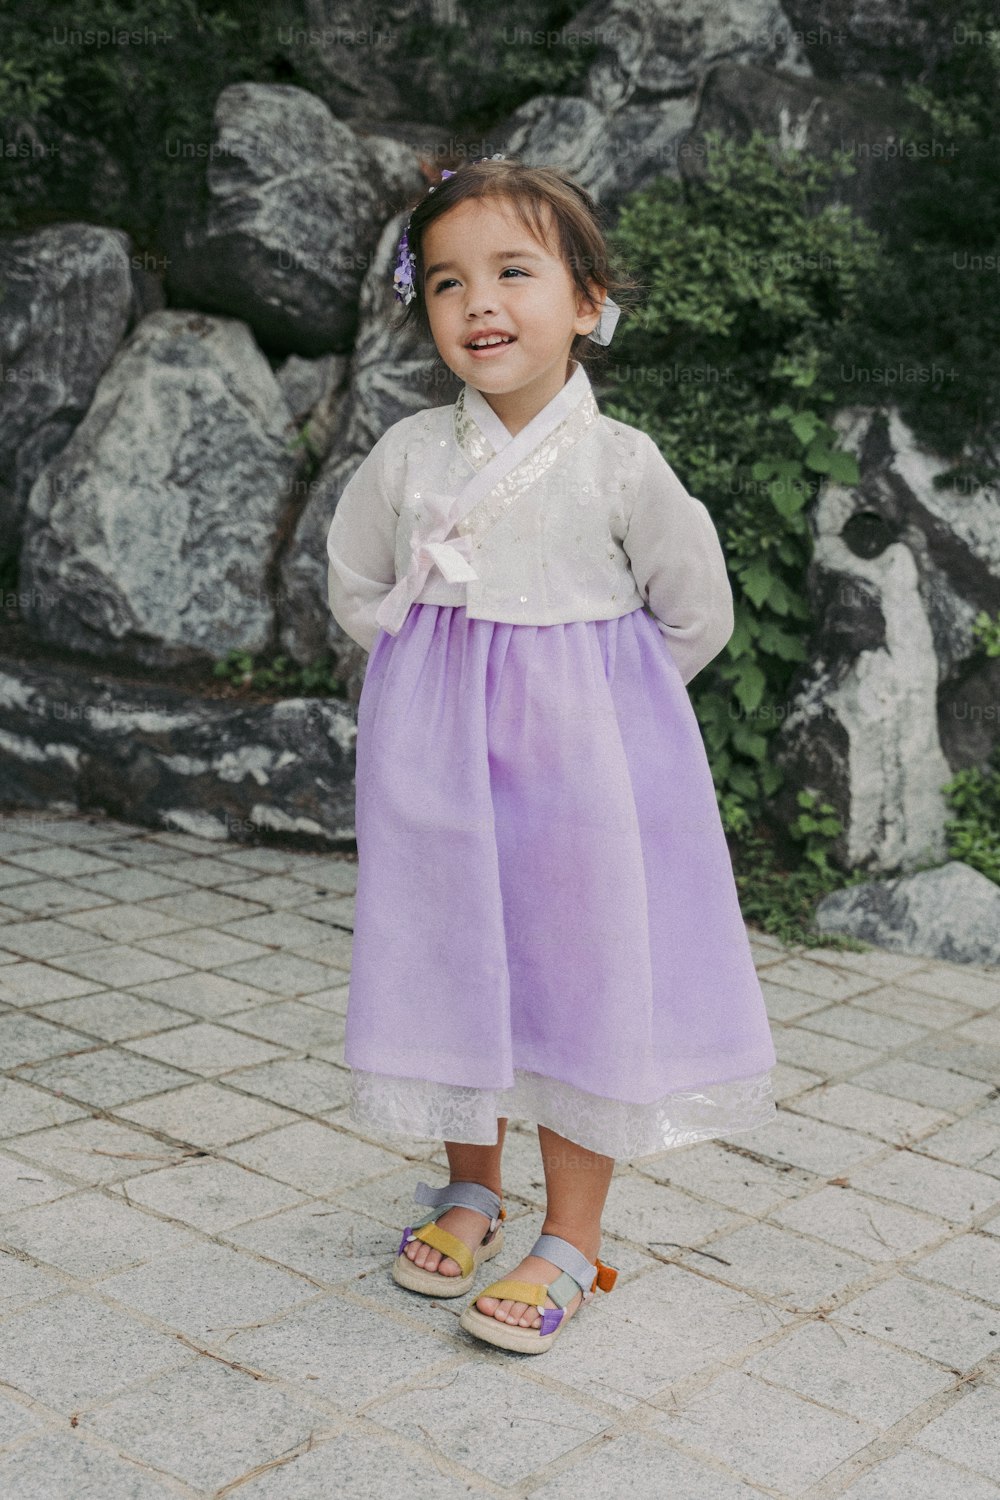 Ein kleines Mädchen in einem lila Kleid, das vor einigen Felsen steht